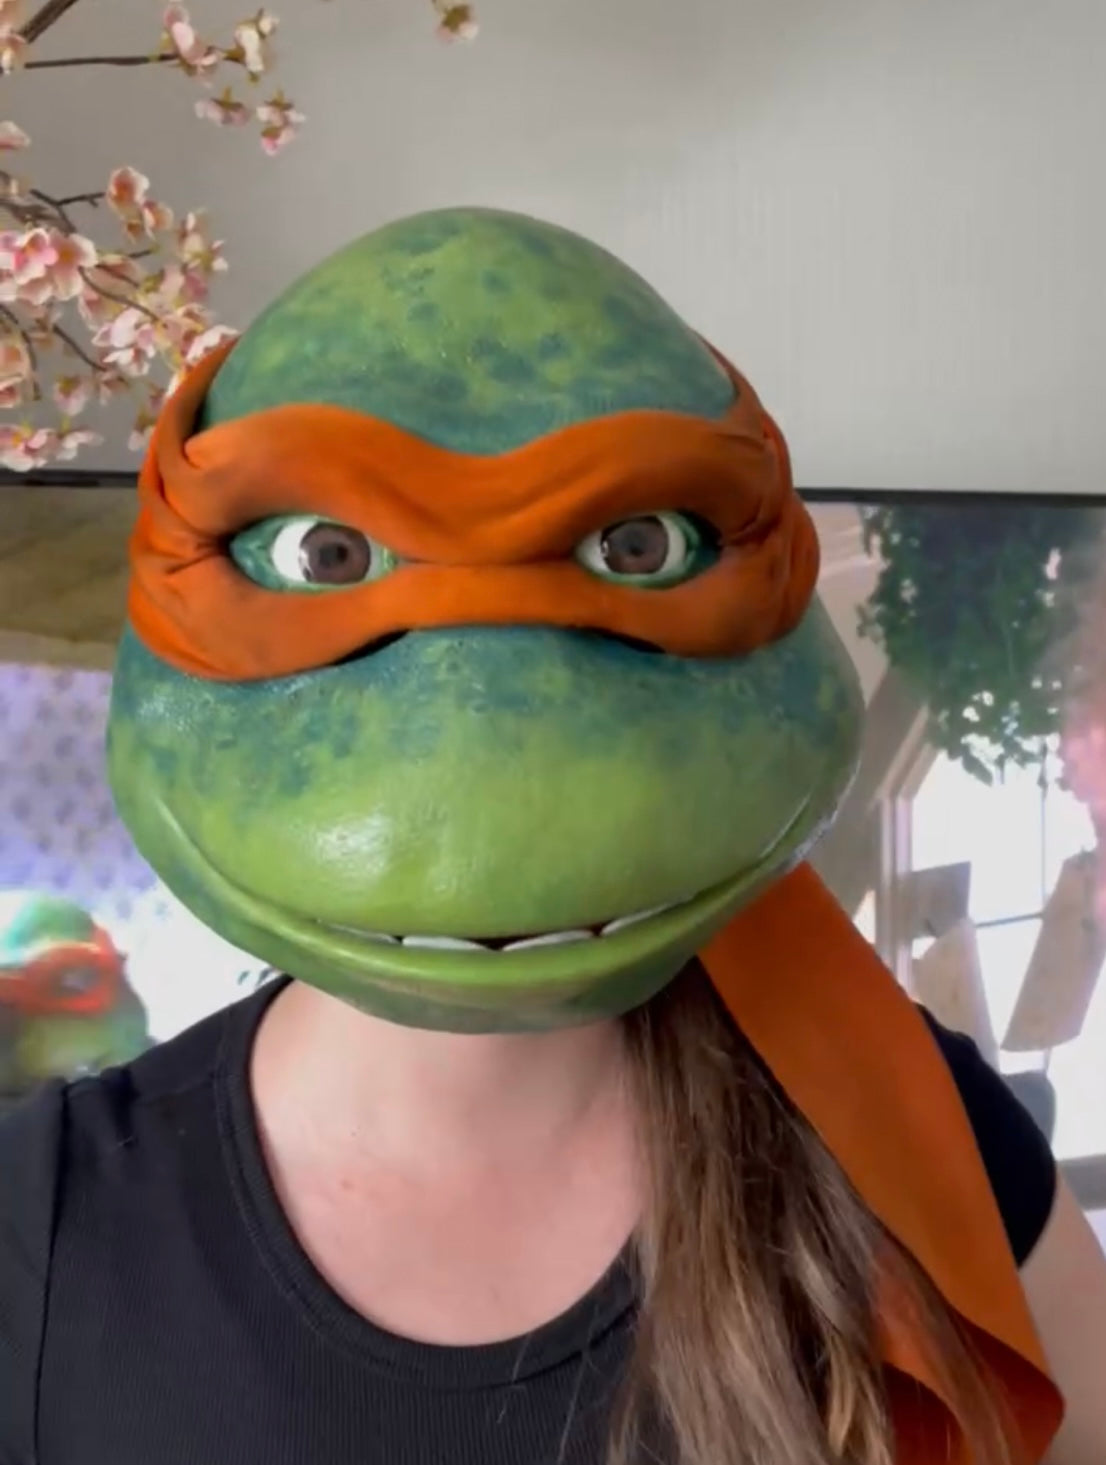 Teenage Mutant Ninja Turtles Raphael costume display prop replica TMNT